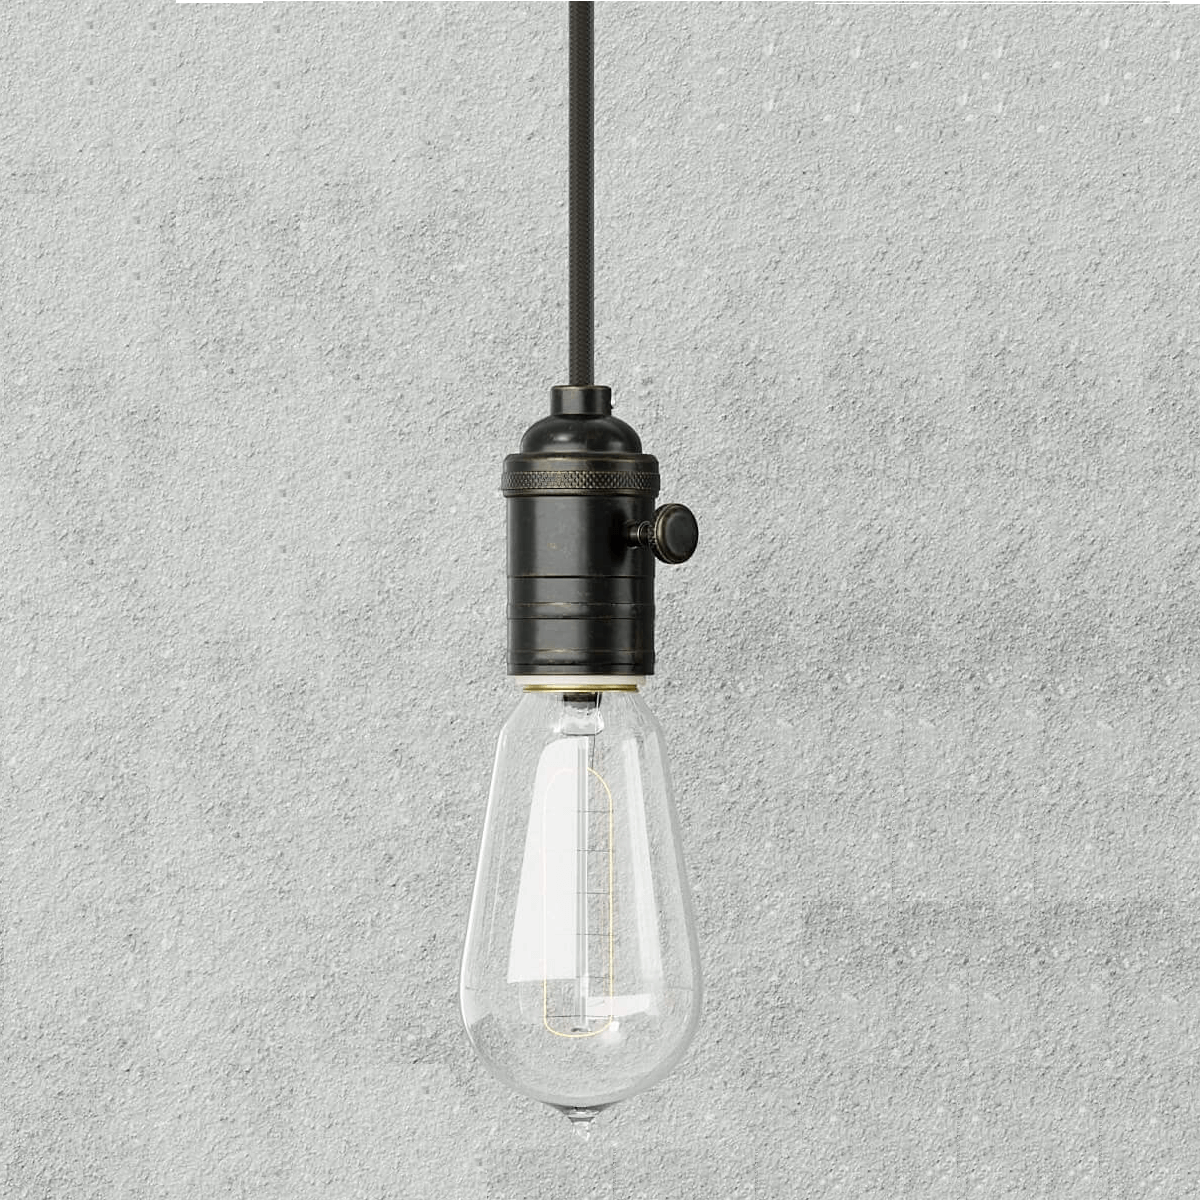 Original Edison Kohlefadenlampe NK65 230V E27 Glühlampe Leuchtmittel um 1948 